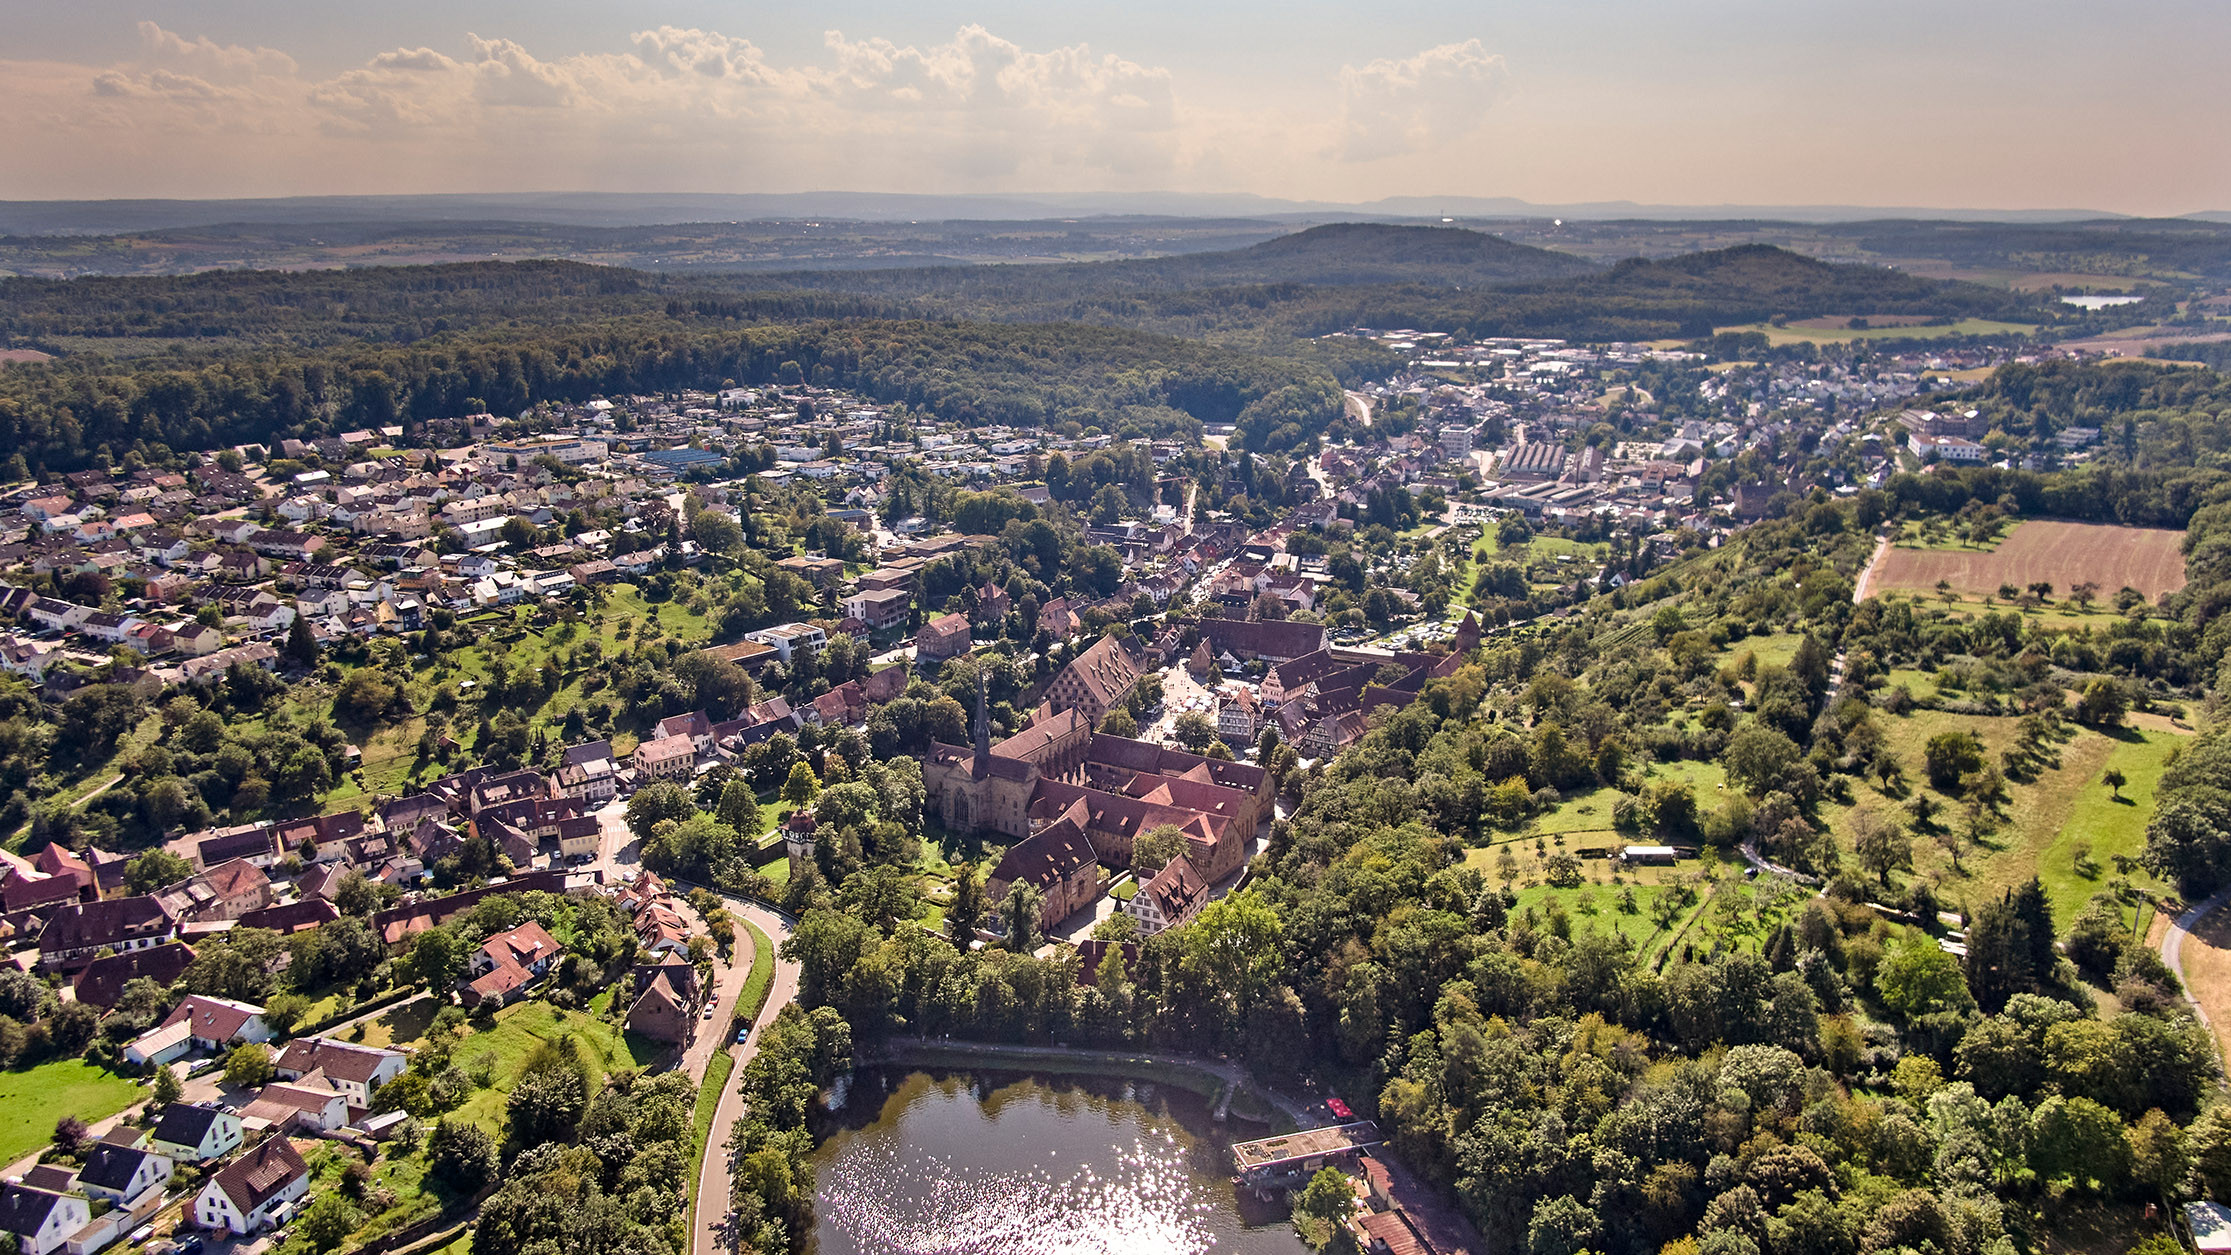 Luftbild von Maulbronn nach Westen mit Tiefer See, Kloster und Wohngebieten